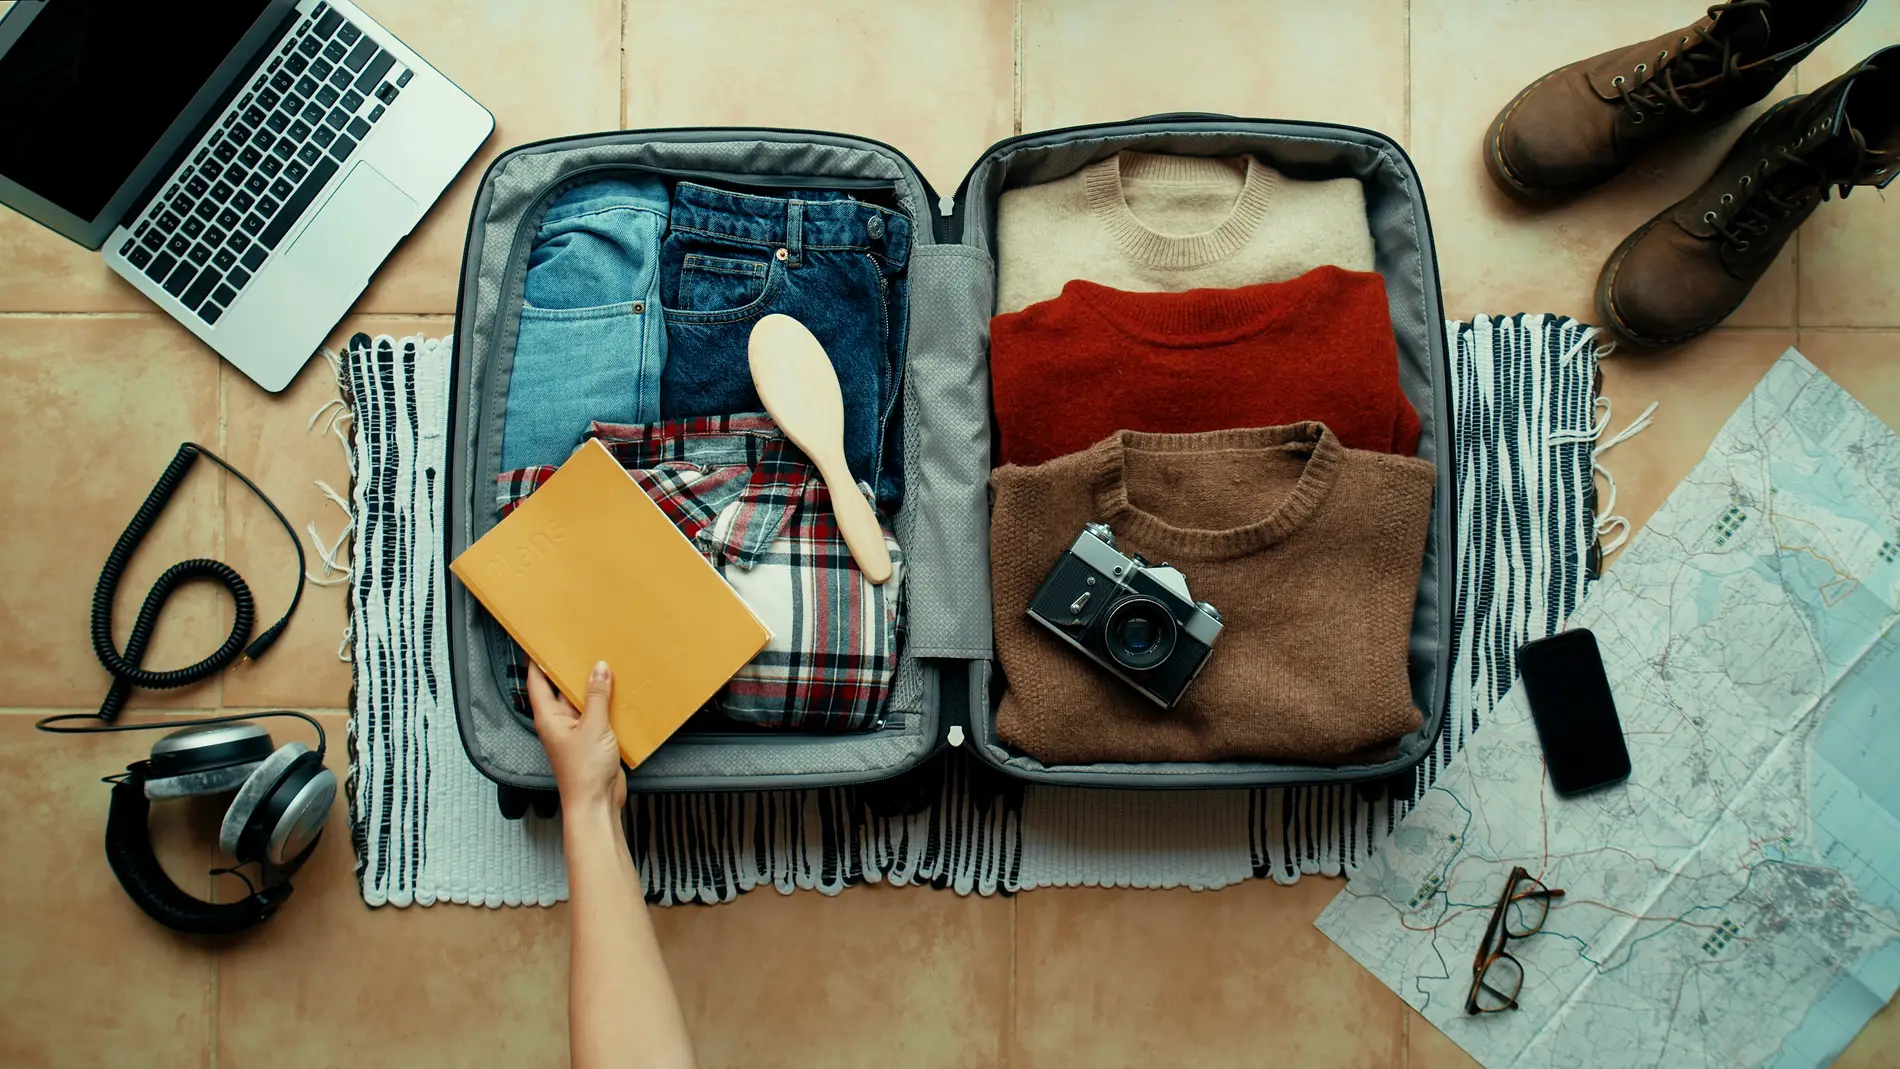 Cómo organizar la maleta para ir de viaje: trucos para ocupar el mínimo  espacio y viajar